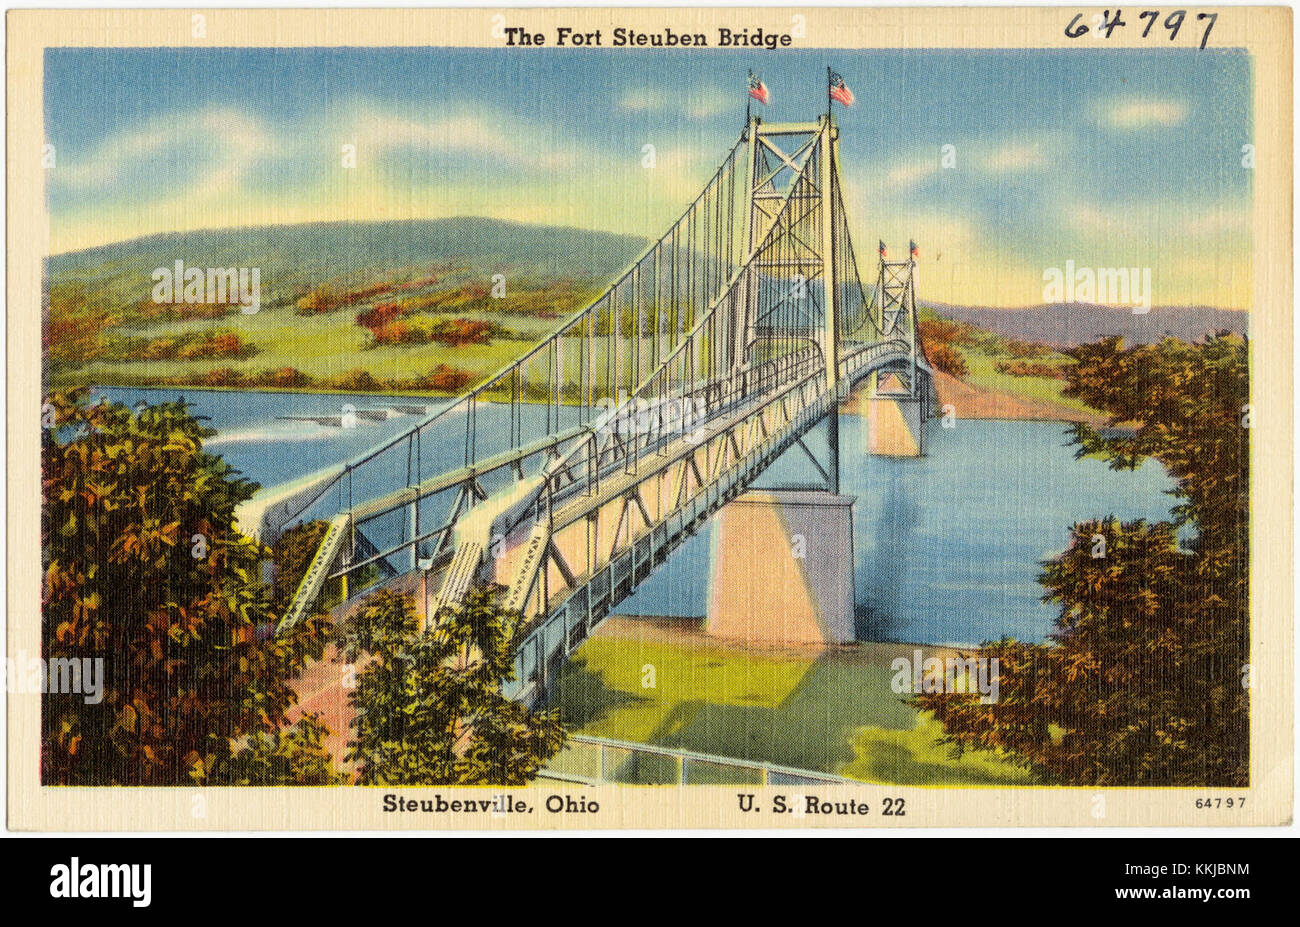 The Fort Steuben Bridge, Steubenville, Ohio, U.S. Route 22 (64797) Stockfoto